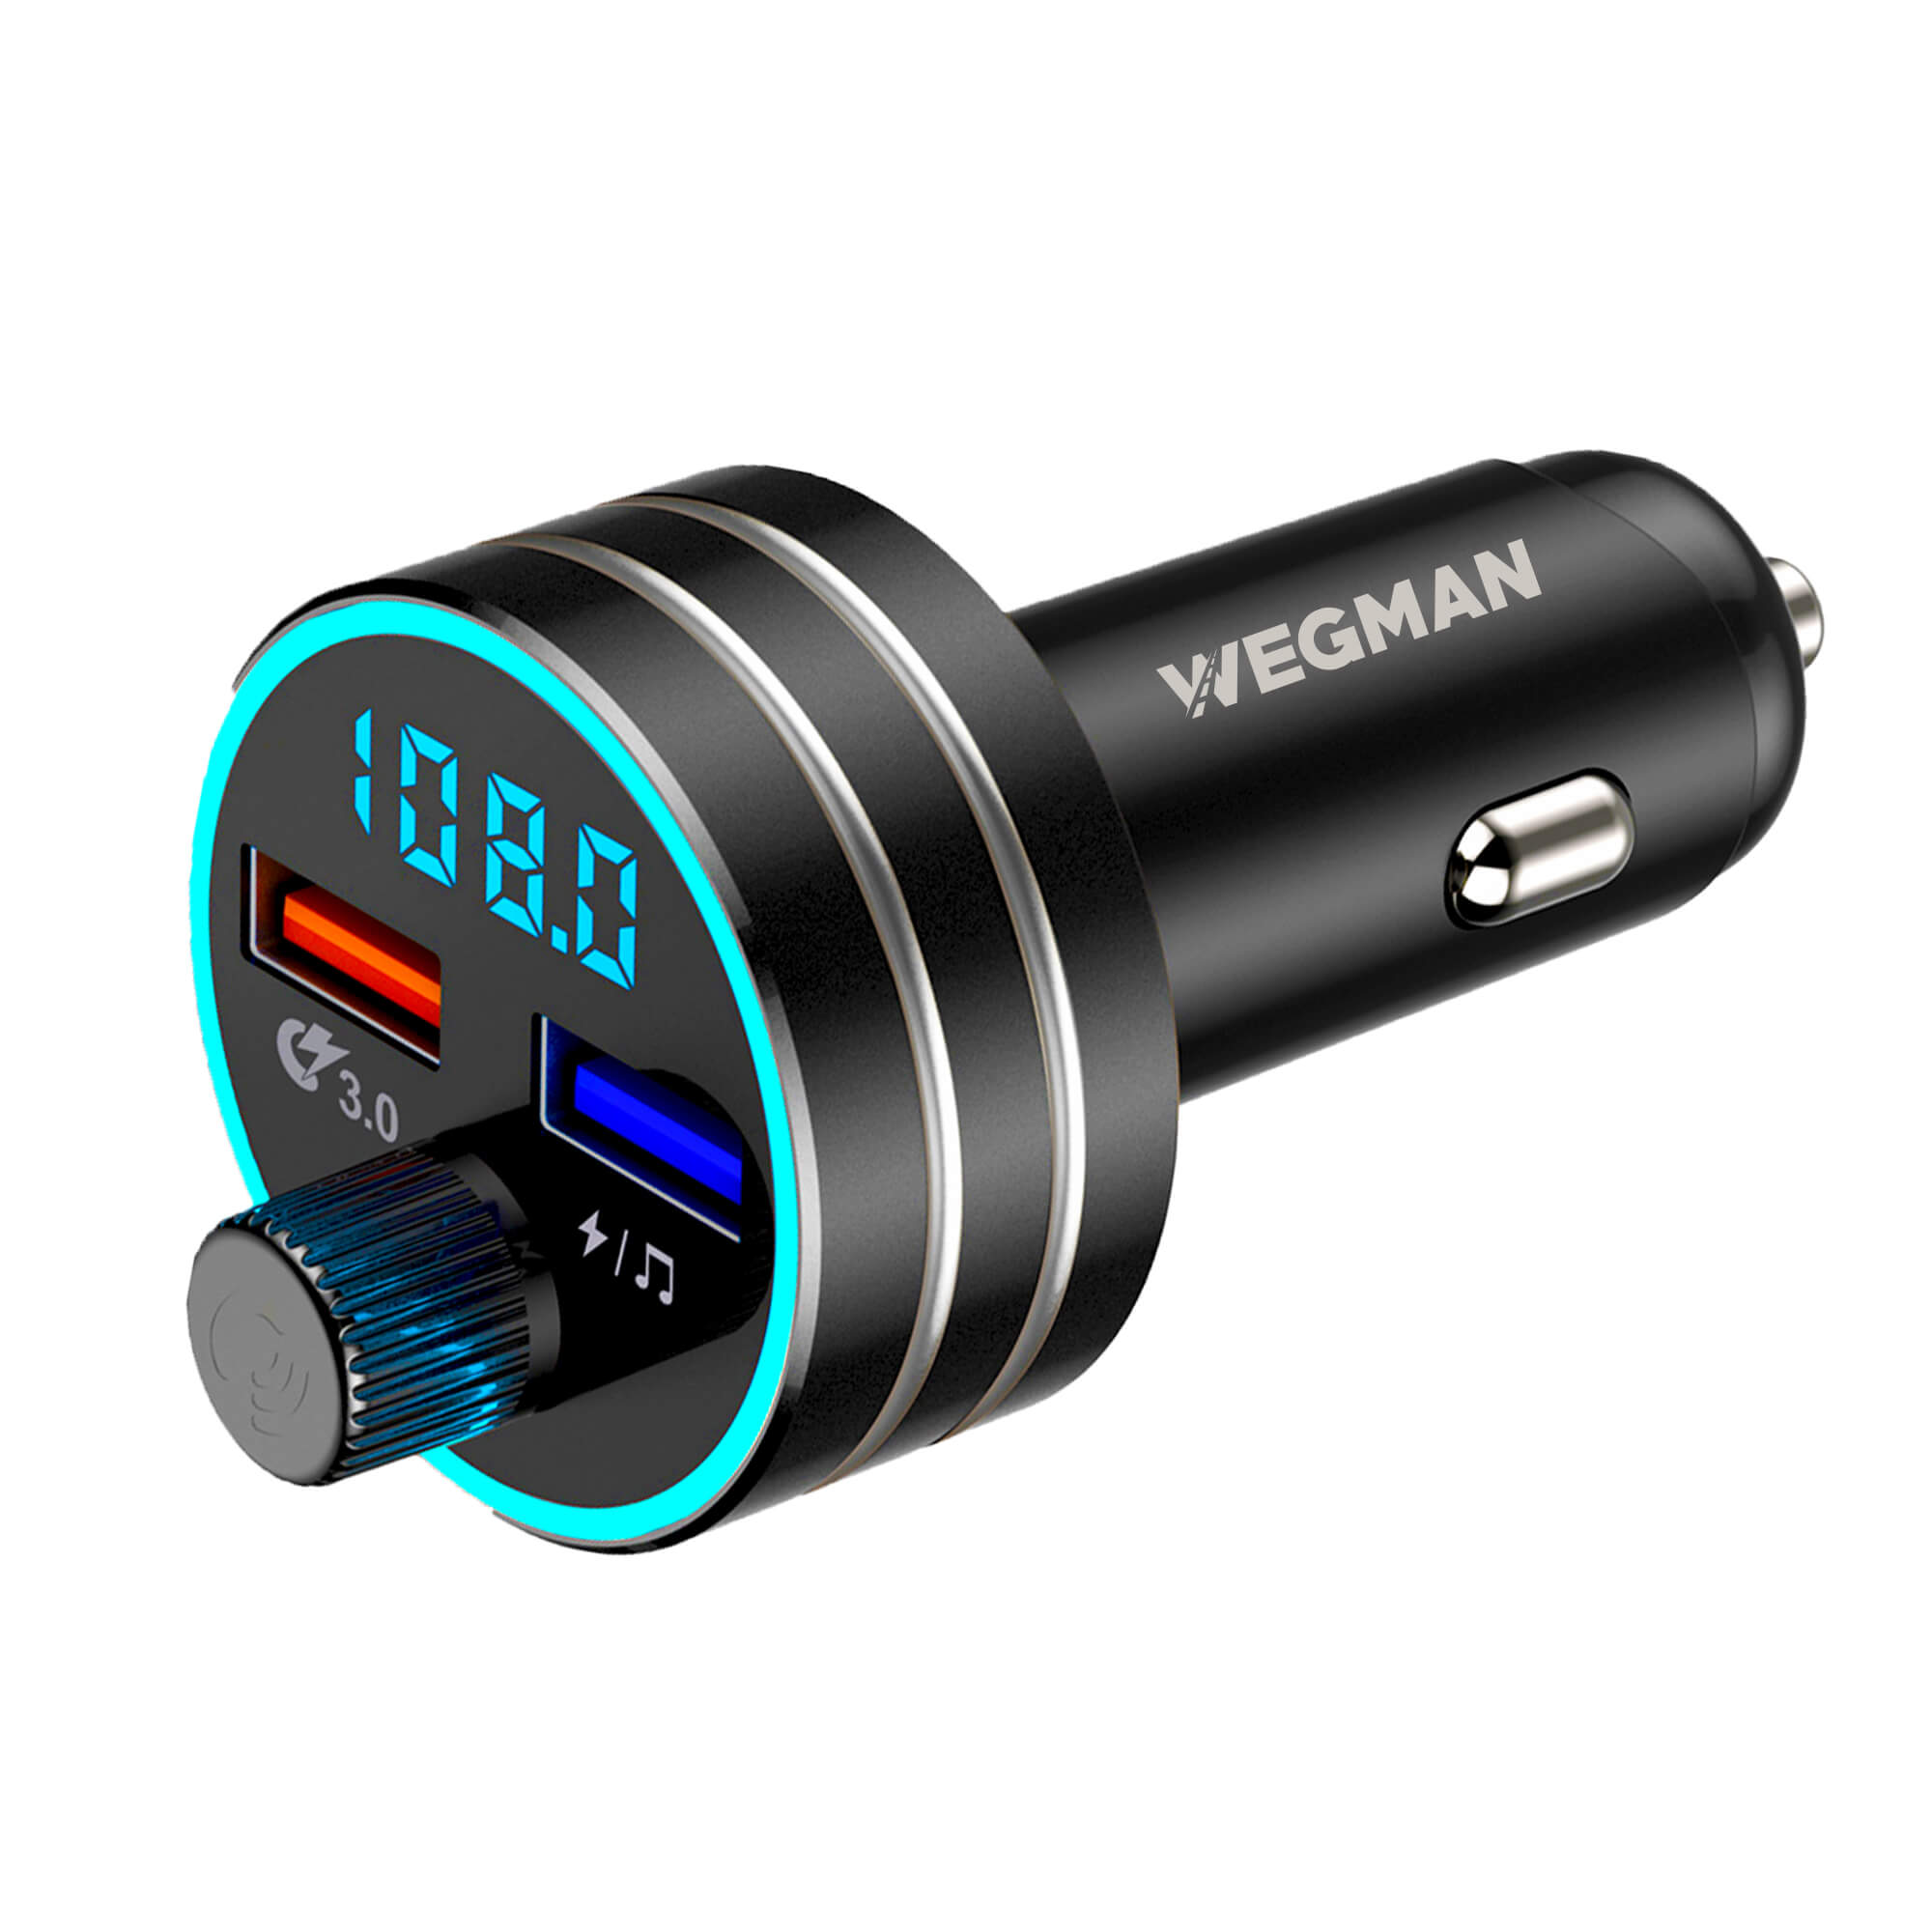 Onnauwkeurig Voeding Machtigen Bluetooth FM Transmitter – Wegman